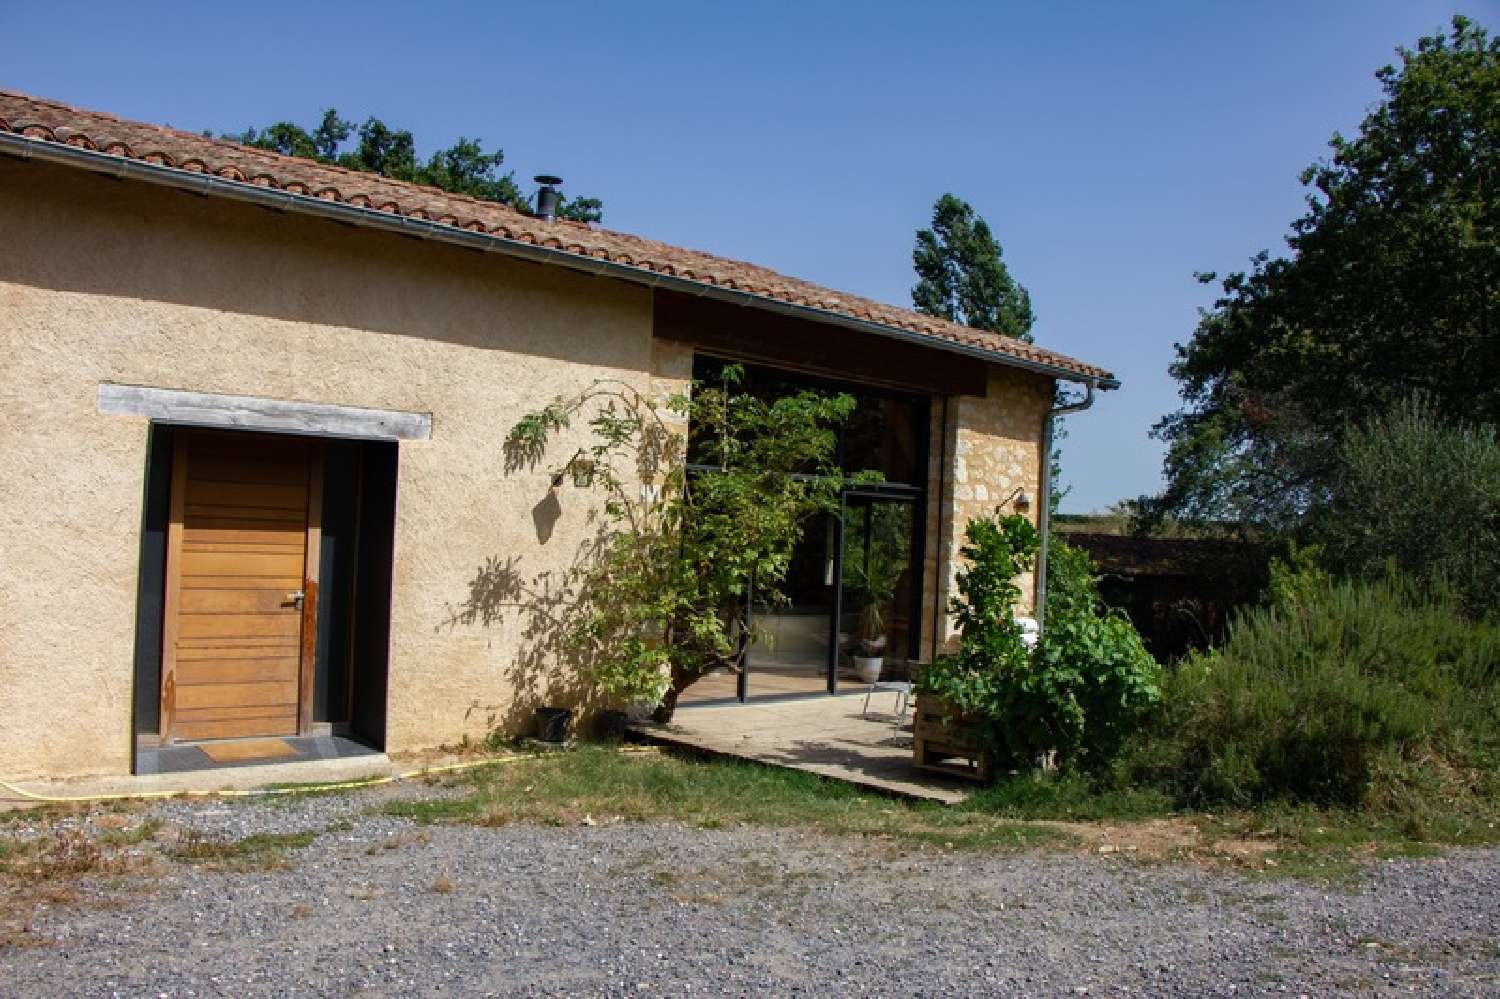  à vendre maison Lavit Tarn-et-Garonne 4